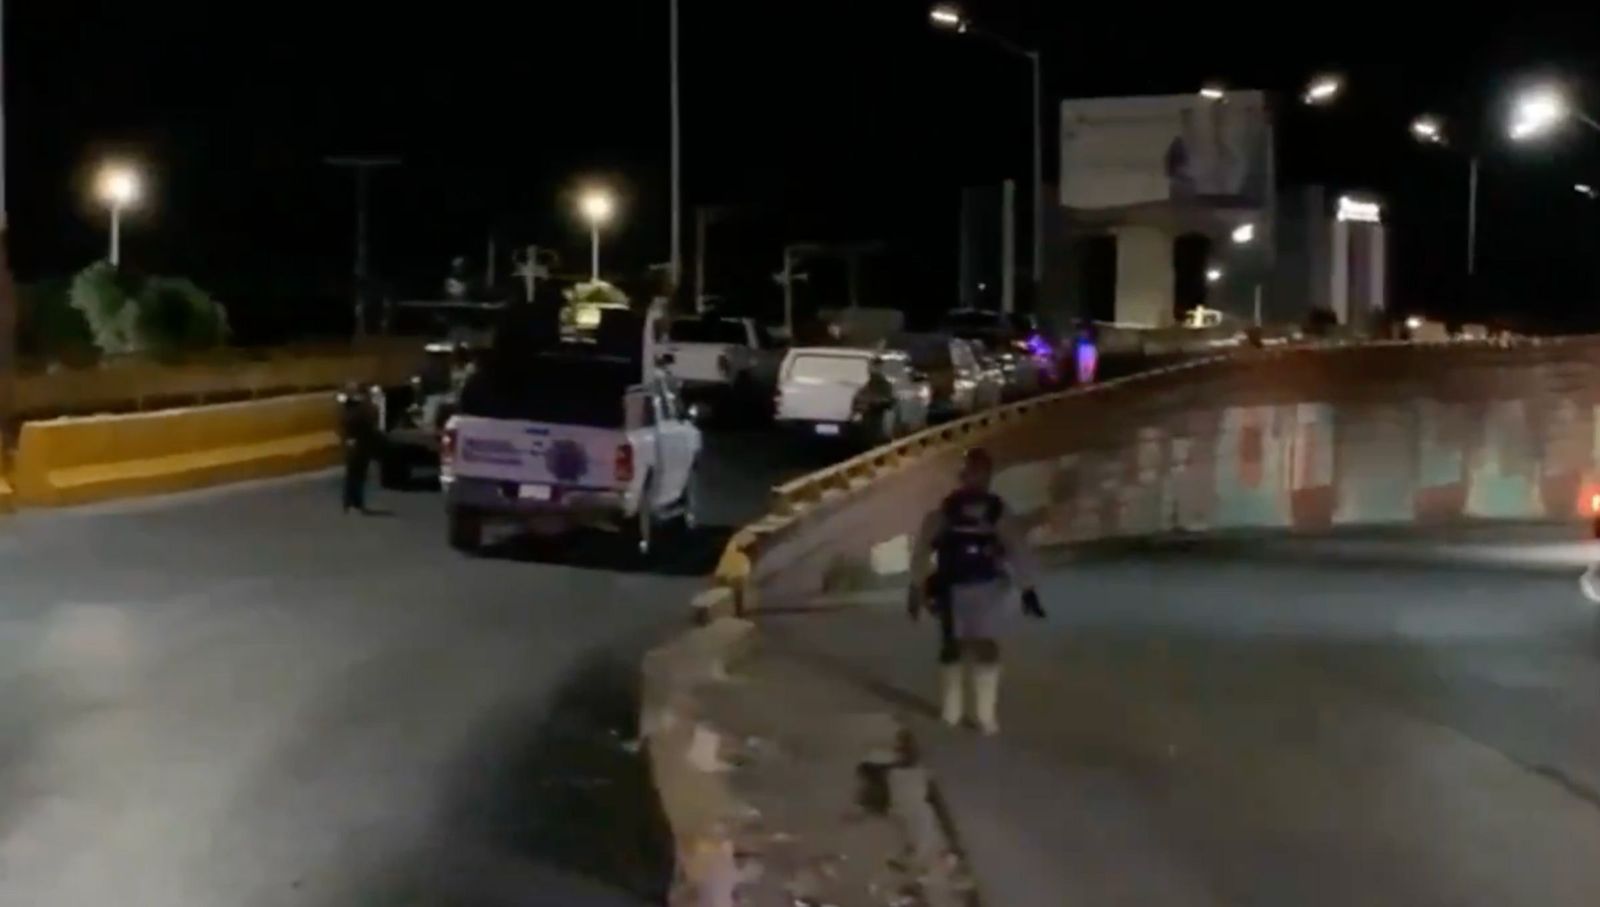 Violencia en Zacatecas: nueve cuerpos tirados y dos bloqueos carreteros